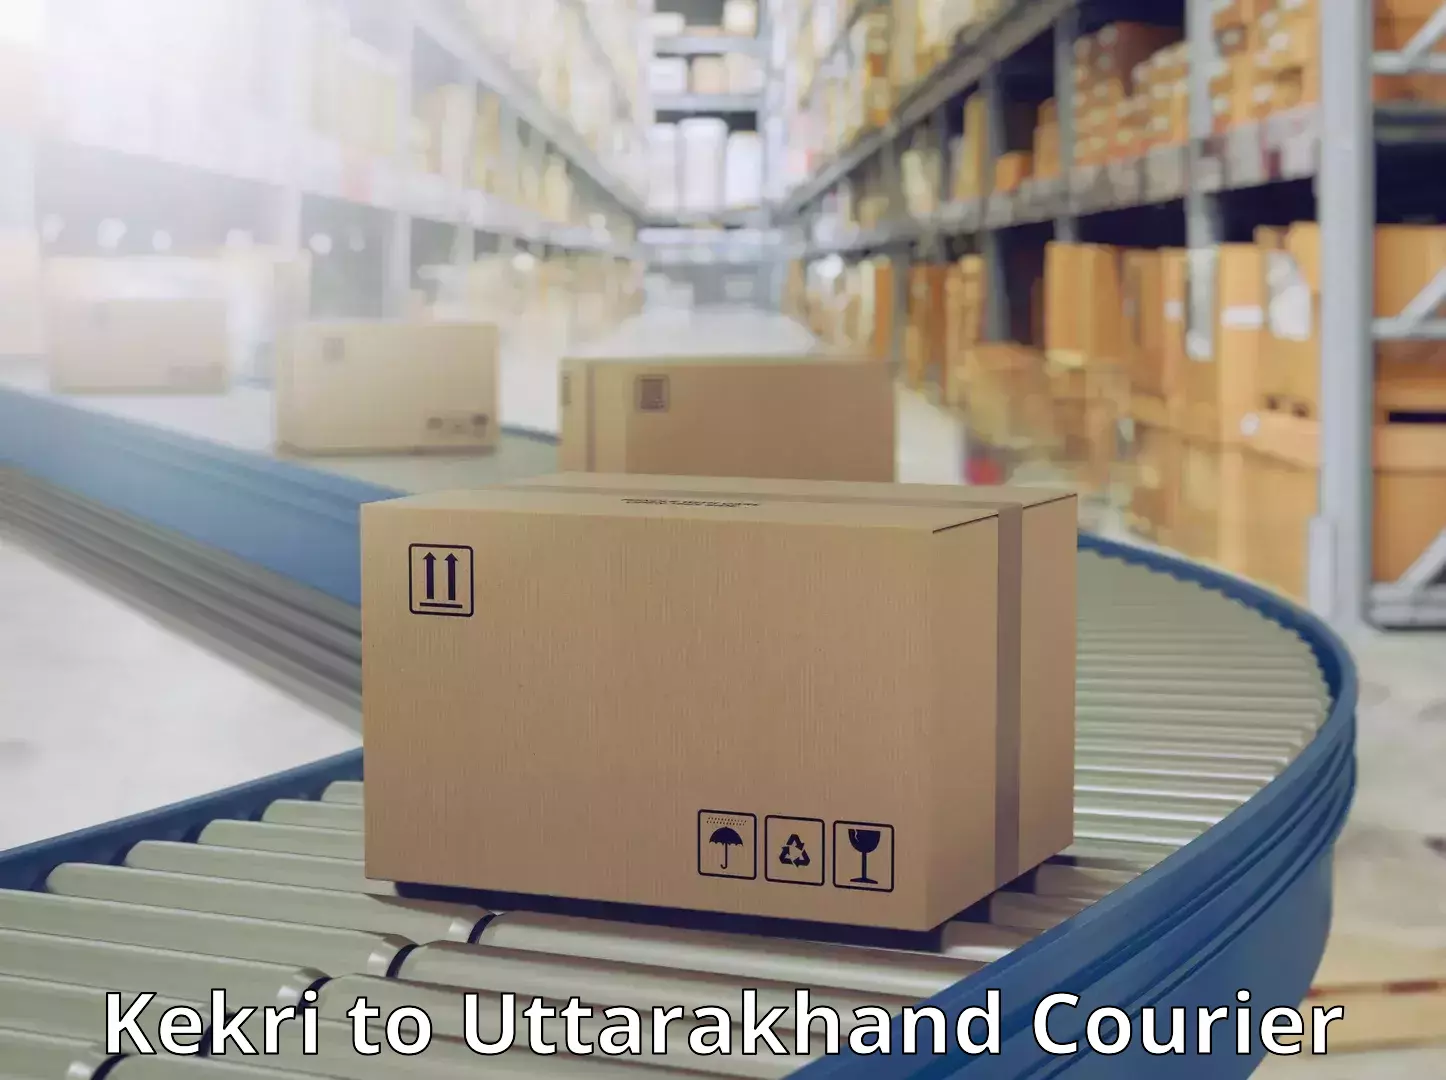 Supply chain delivery Kekri to Rishikesh